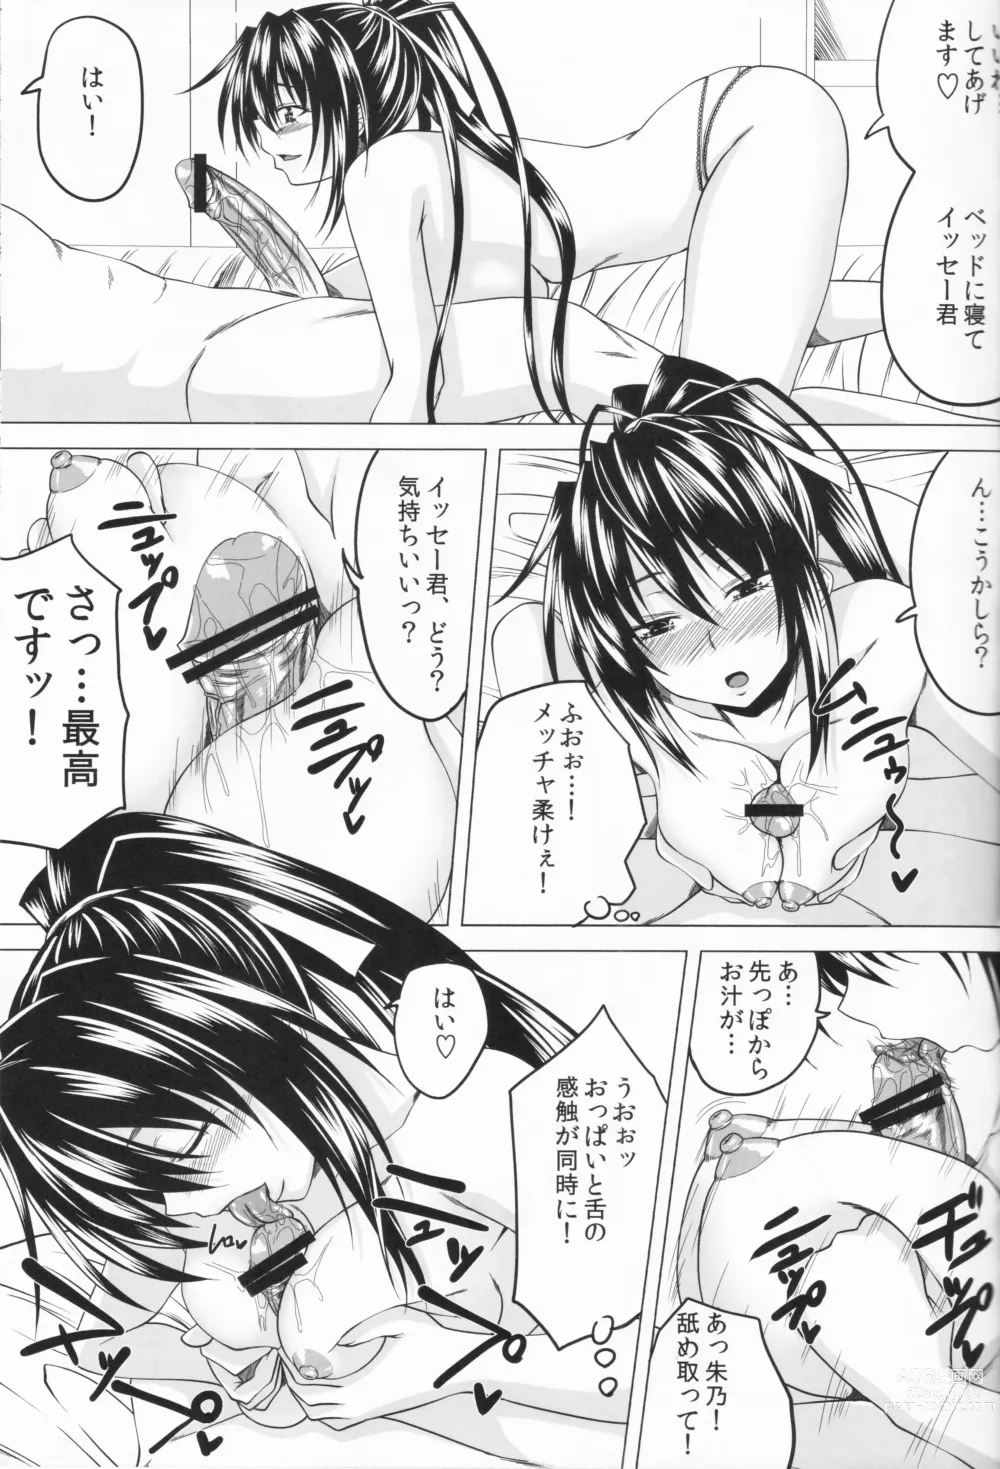 Page 14 of doujinshi Risou no Hyoui Seikatsu